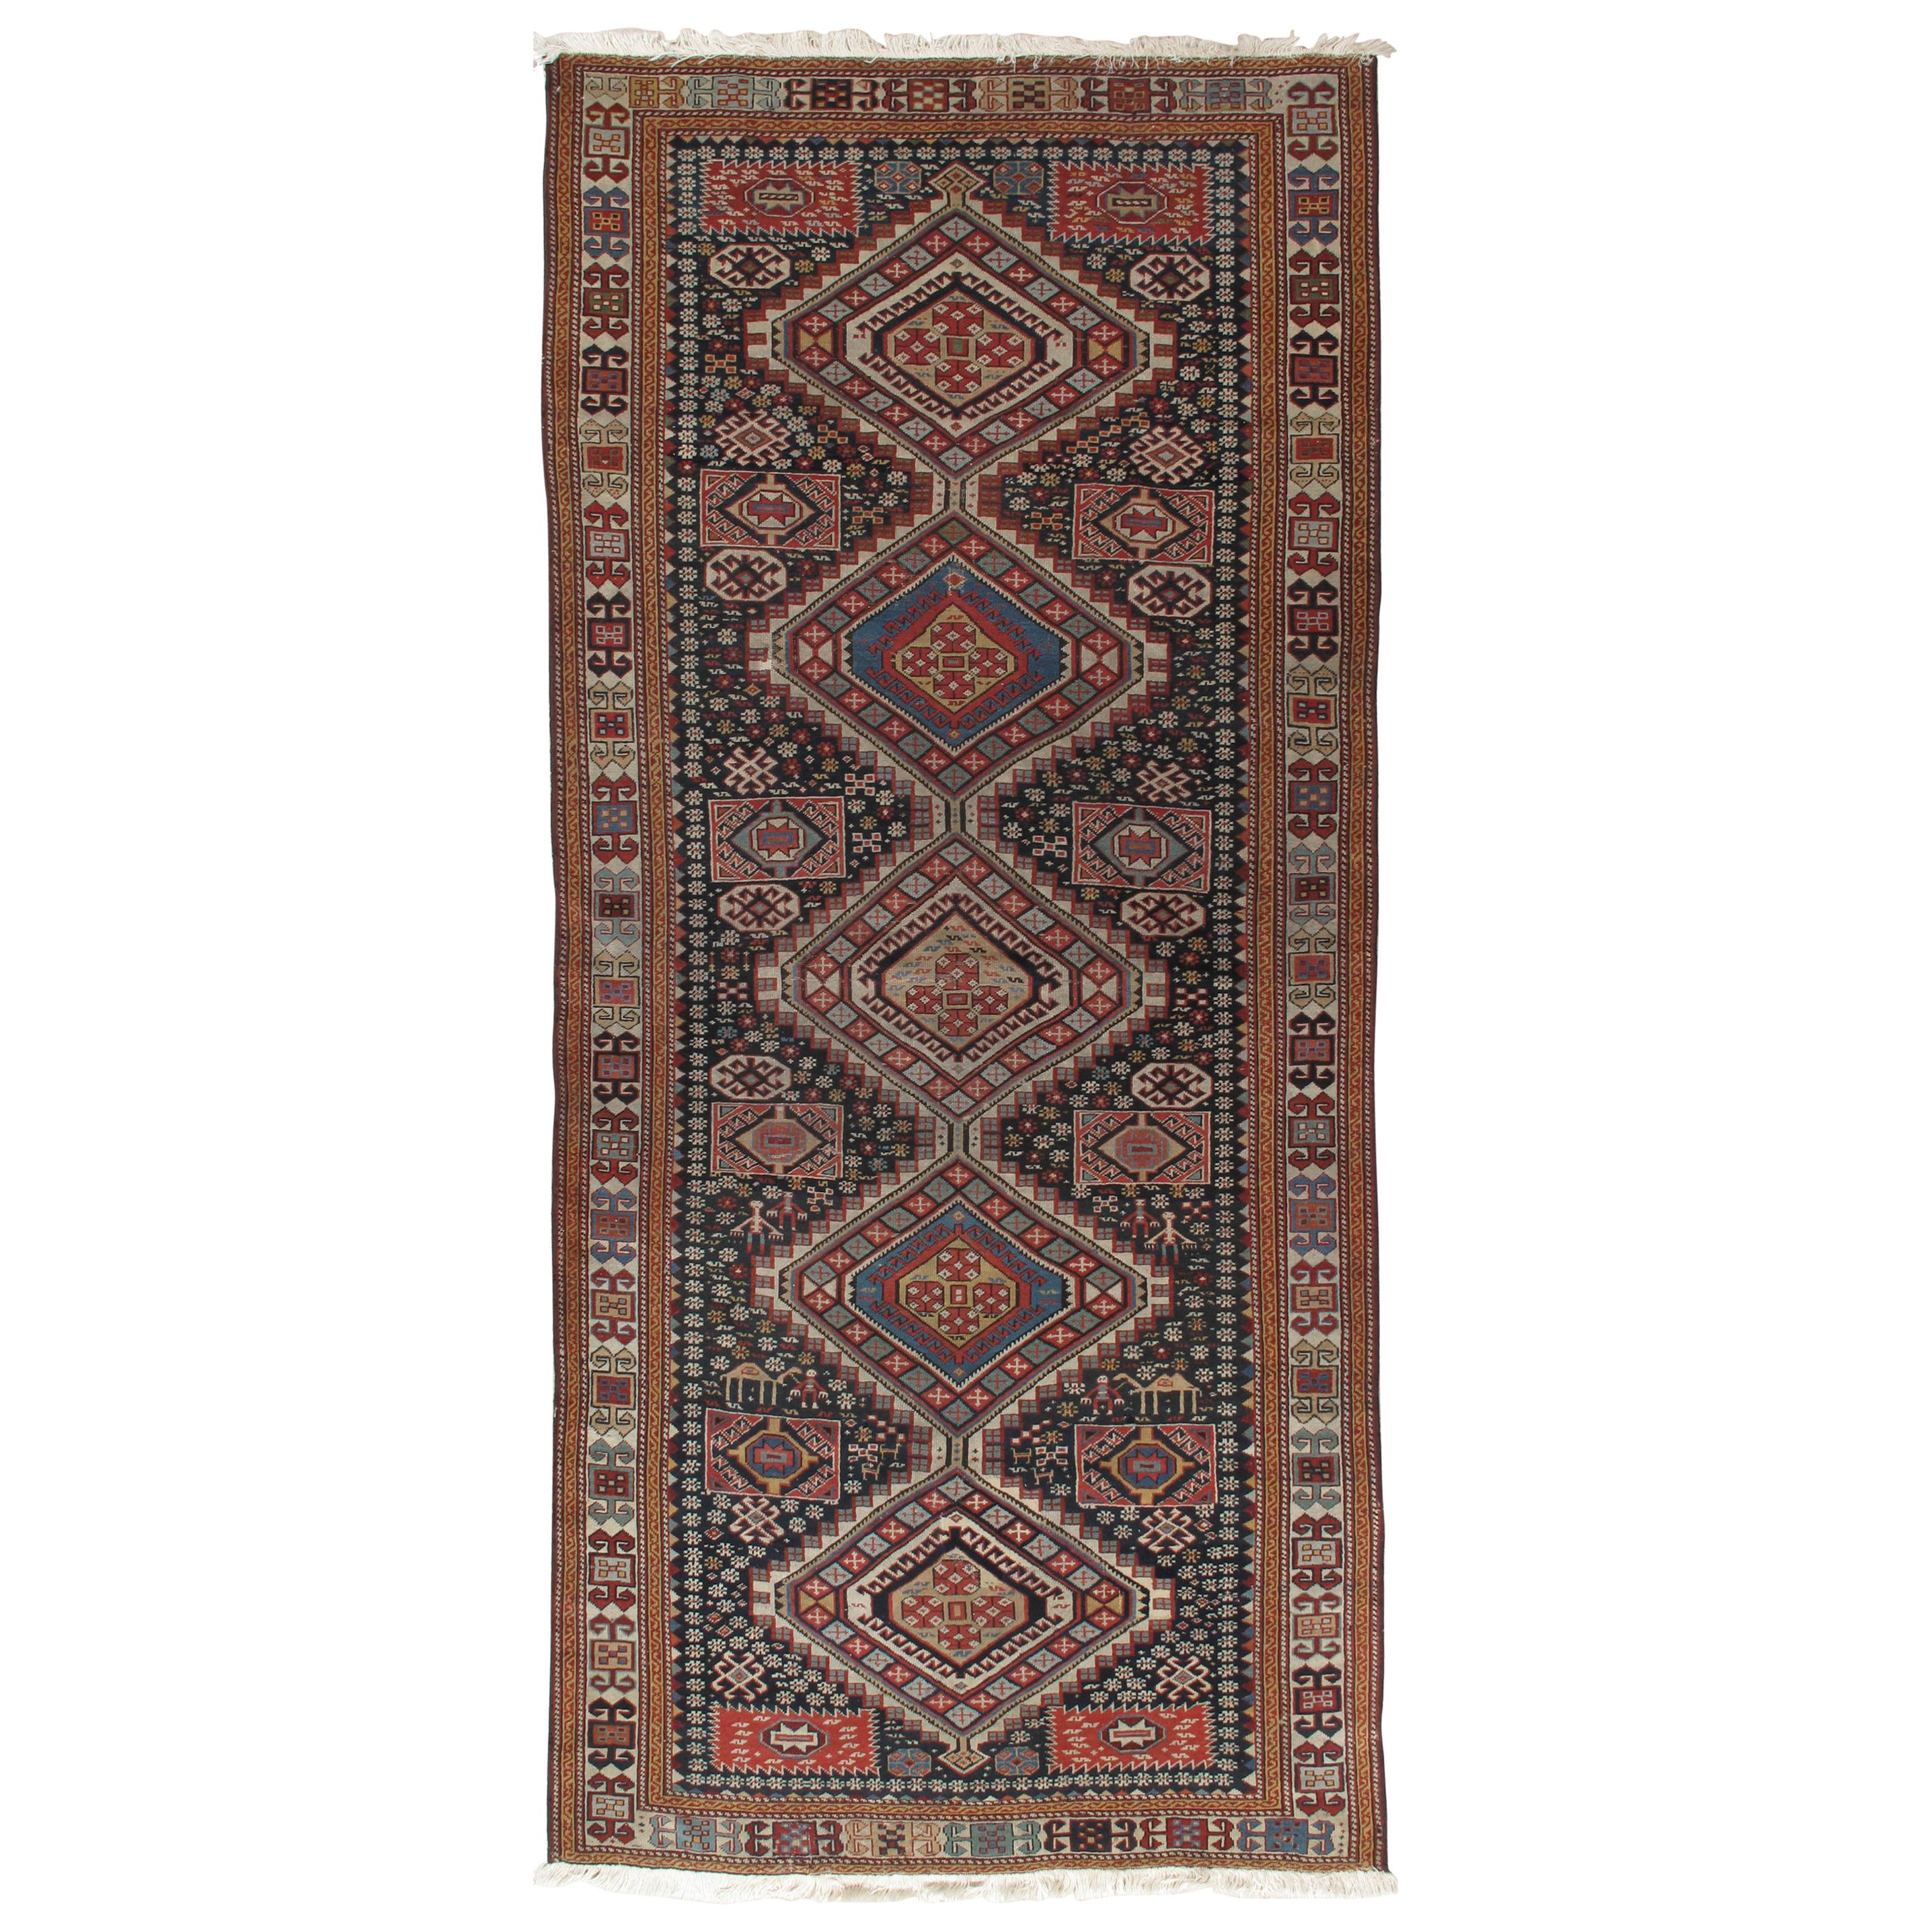 Antiker Shirvan-Teppich, handgeknüpft, orientalischer Wollteppich in Marineblau, Rot, Beige, Grau